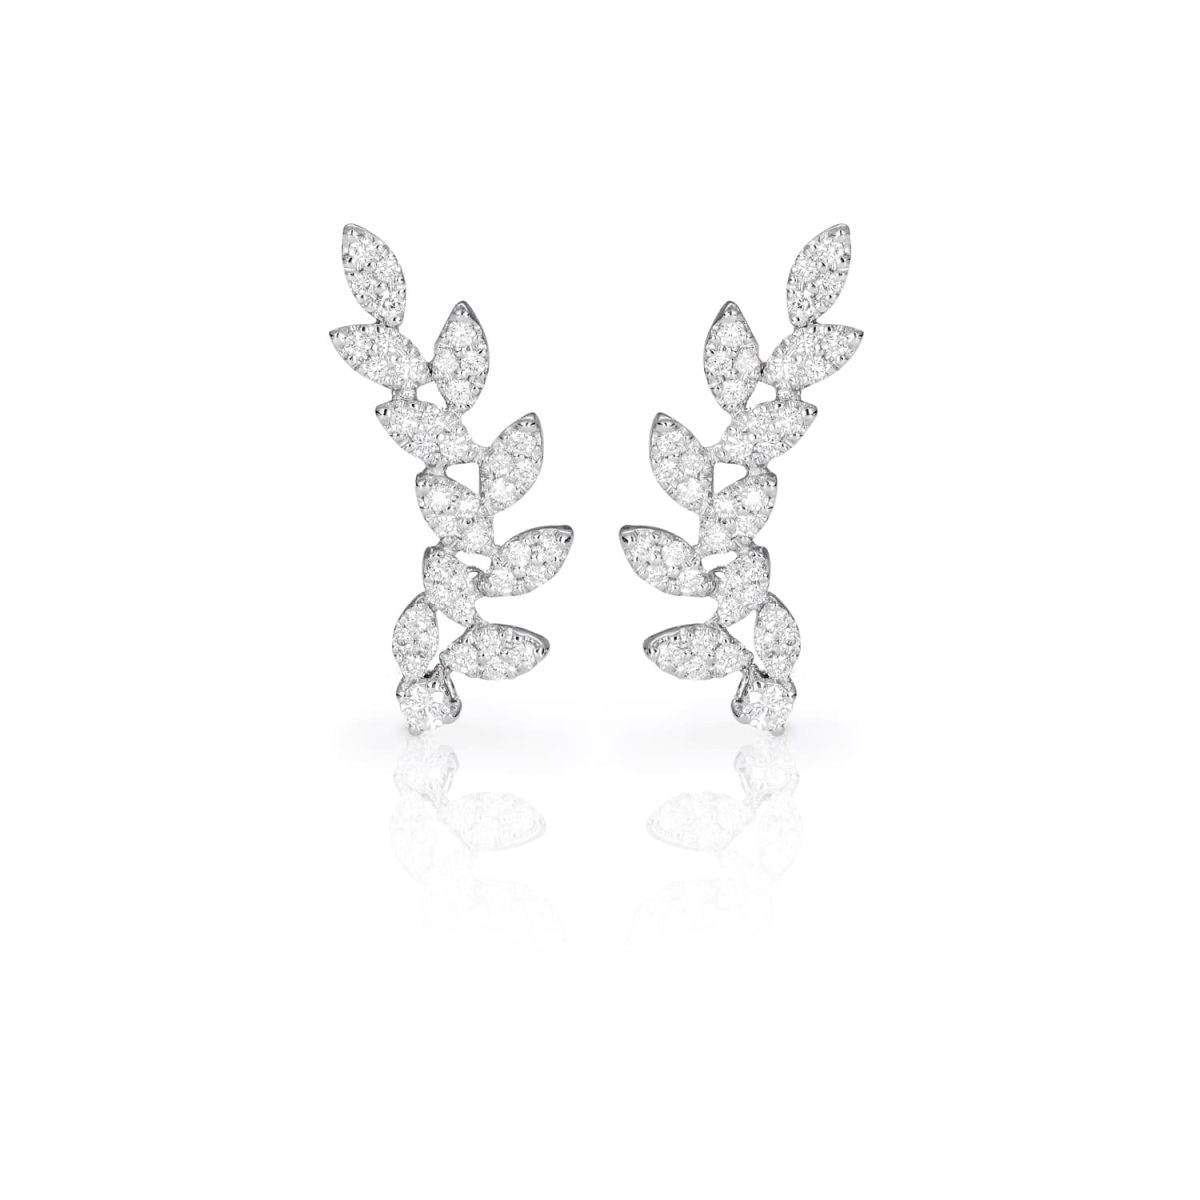 Pendientes Fierce Pendientes de oro blanco de 18K adornados con 0,76ct de diamantes talla brillante.